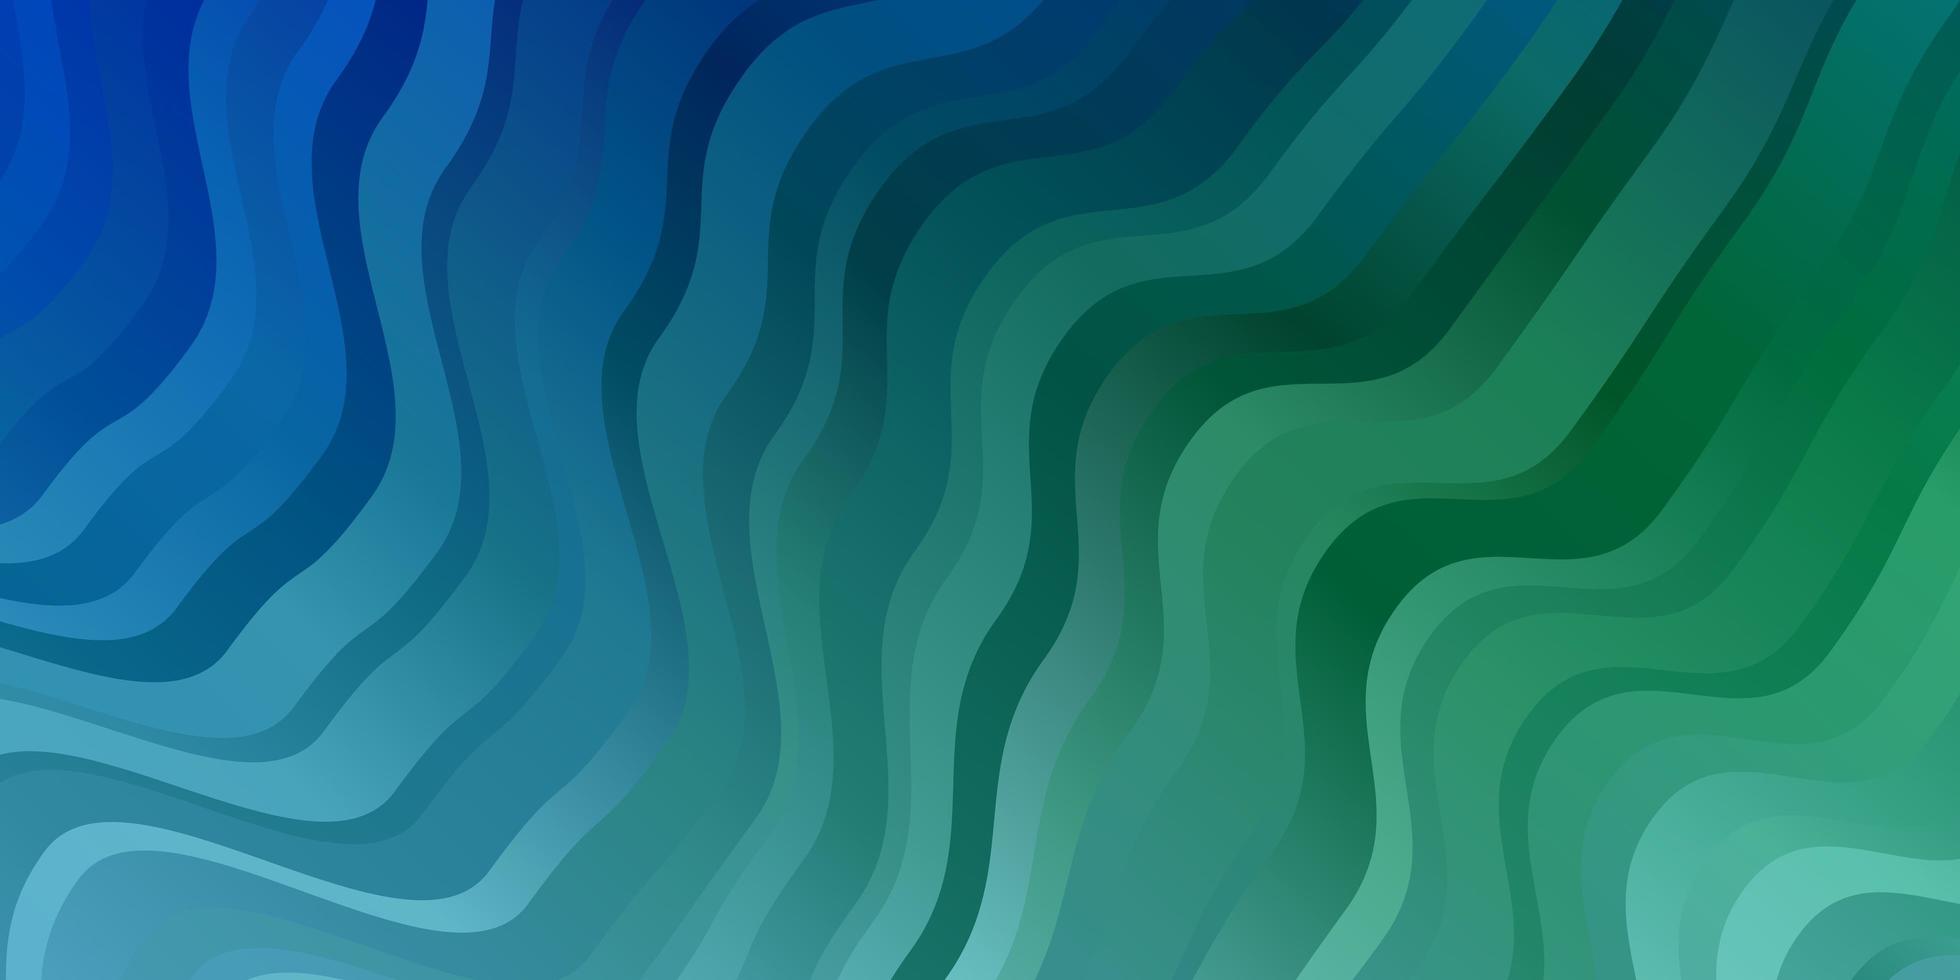 sfondo vettoriale azzurro, verde con linee piegate.